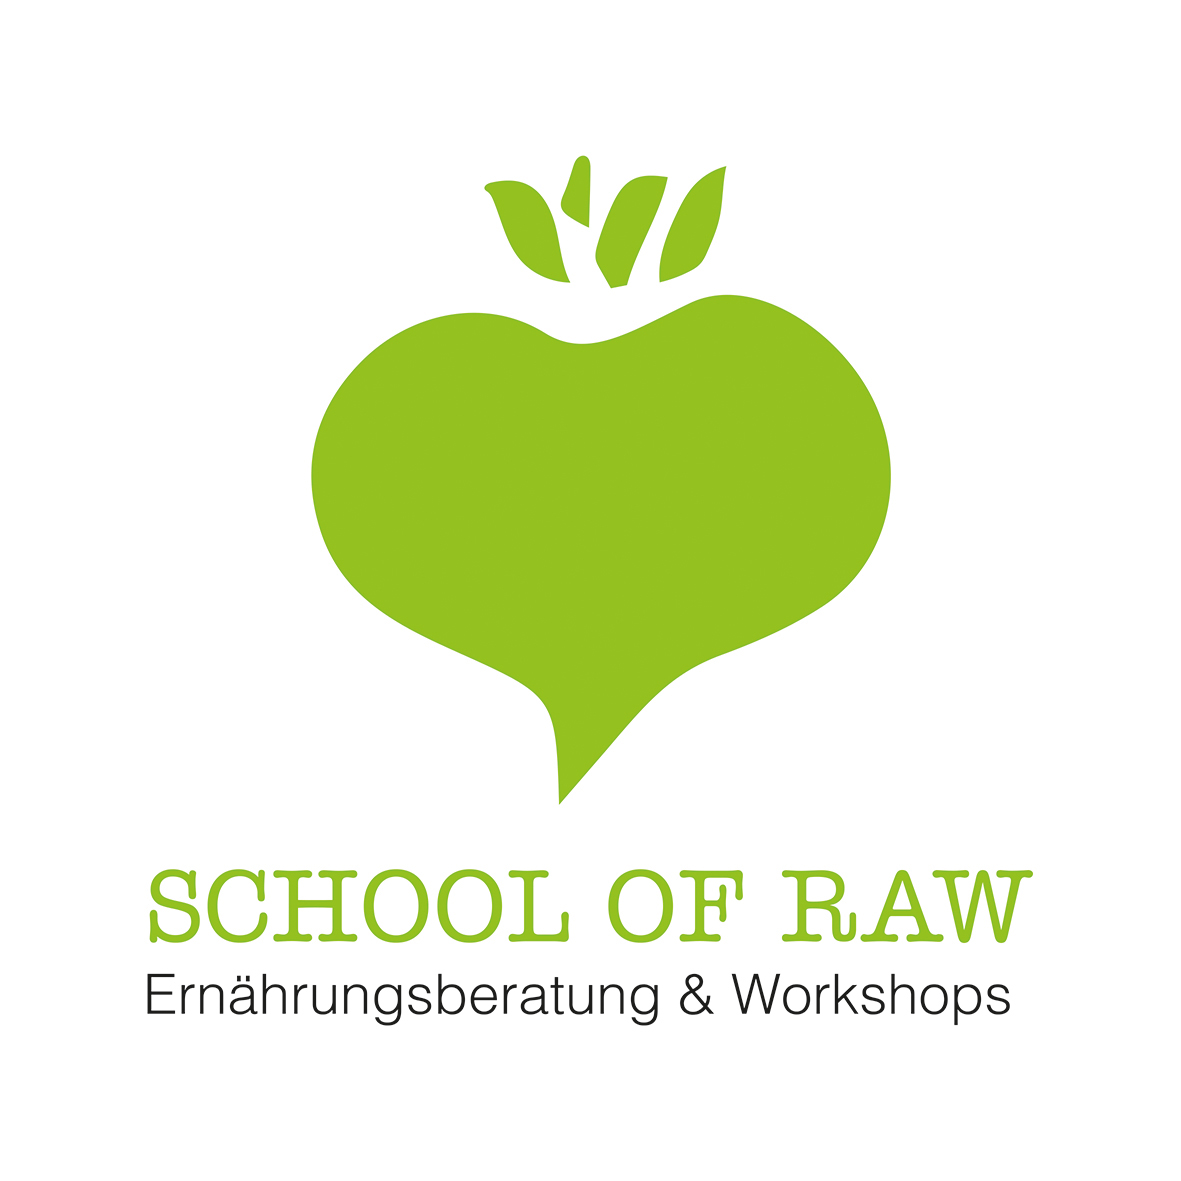 Eröffnung der School Of Raw - erste Workshops stehen fest! 1